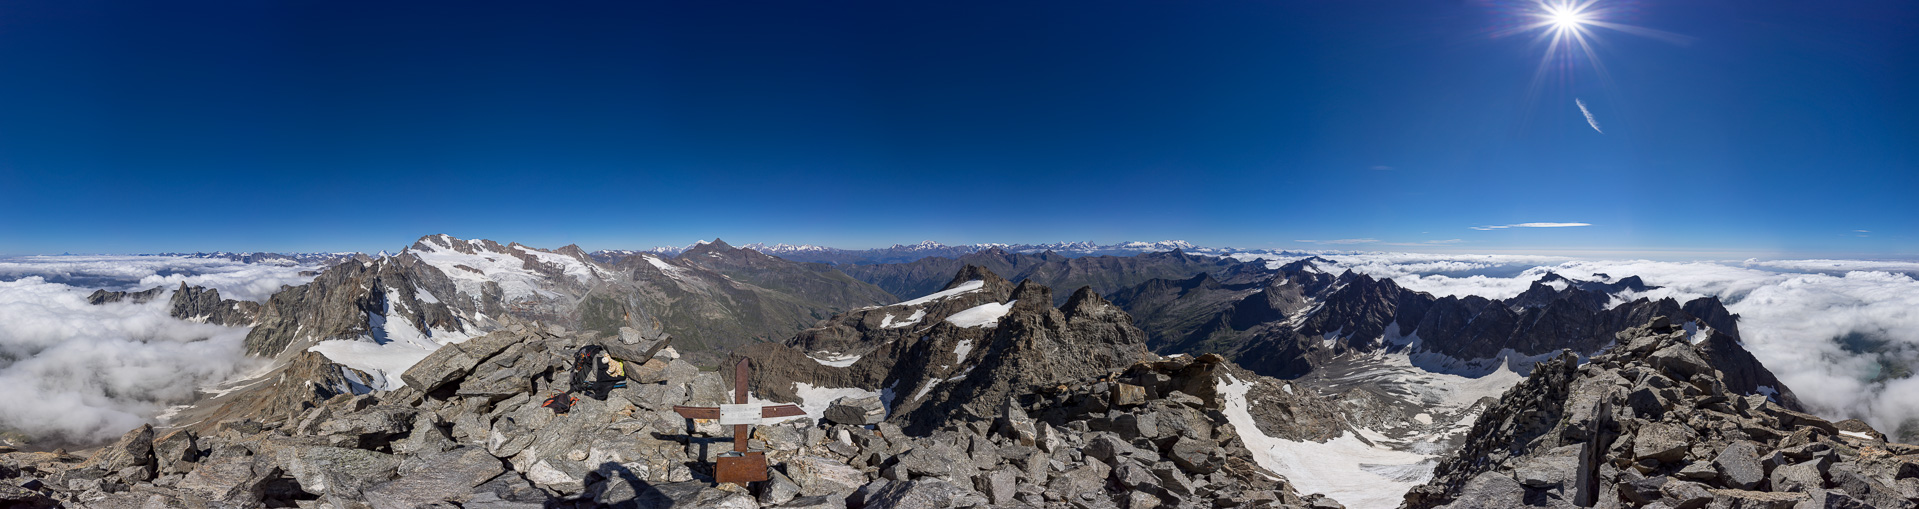 Unglaublich schönes Gipfelpanorama mit Blick über (fast) die gesamten Westalpen.